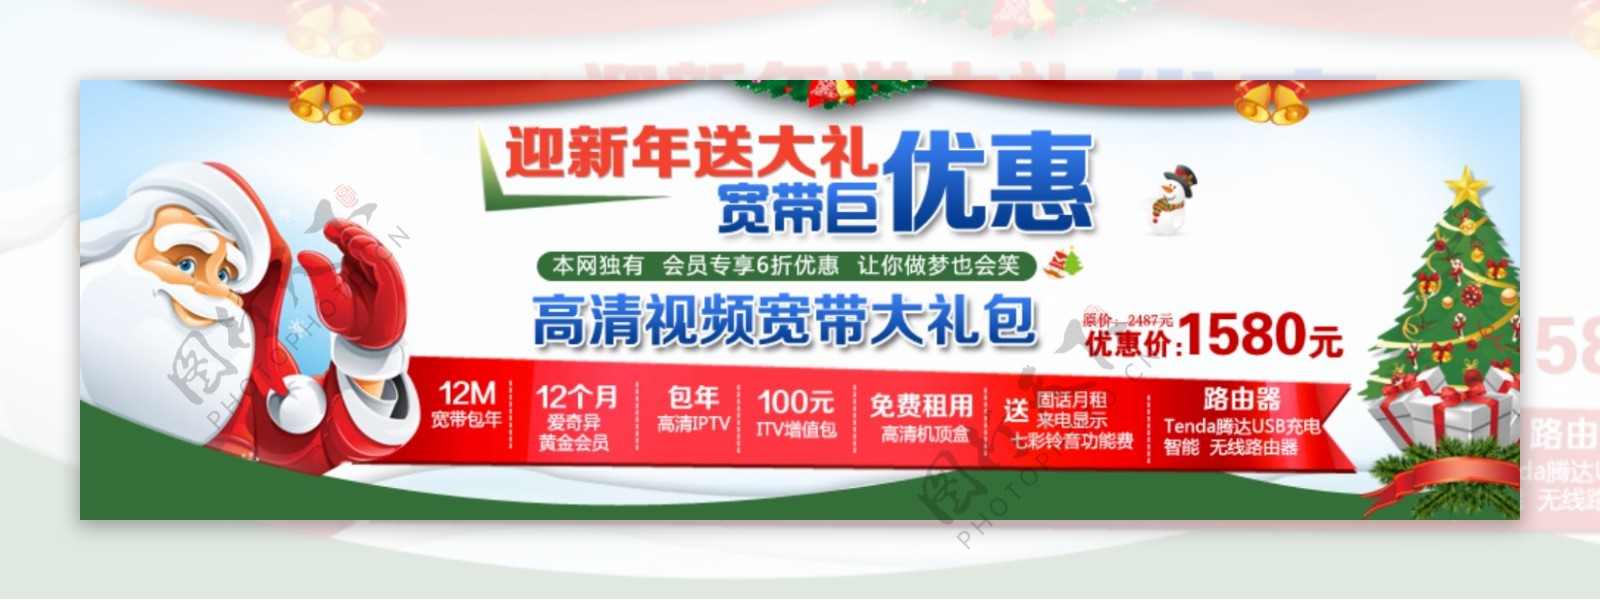 中国电信圣诞活动首页图片